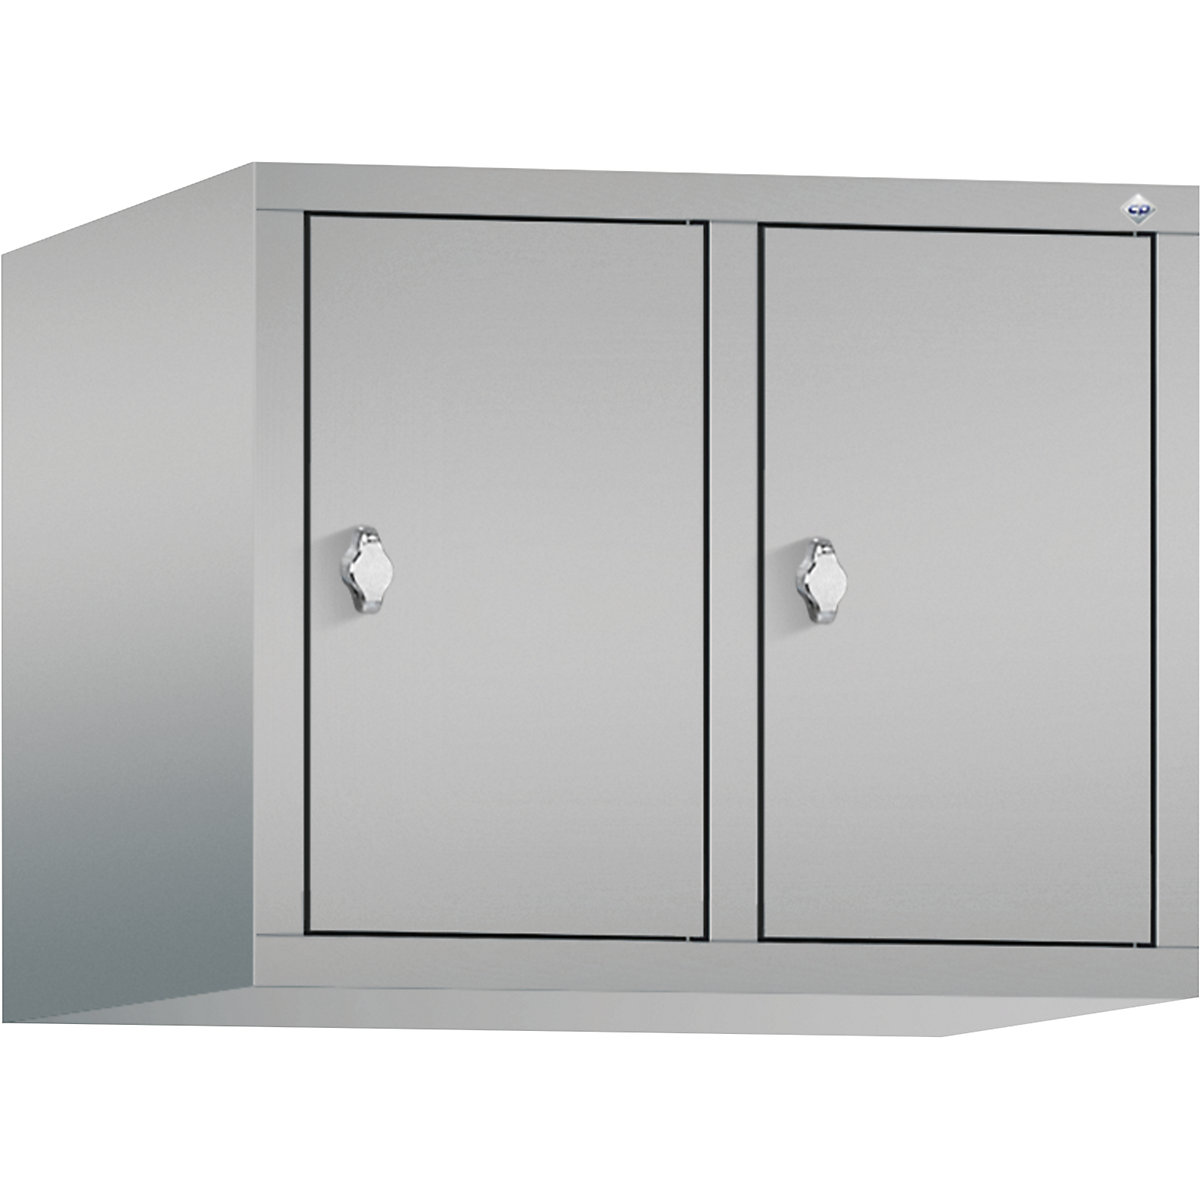 Altillo CLASSIC – C+P, 2 compartimentos, anchura de compartimento 300 mm, aluminio blanco-13